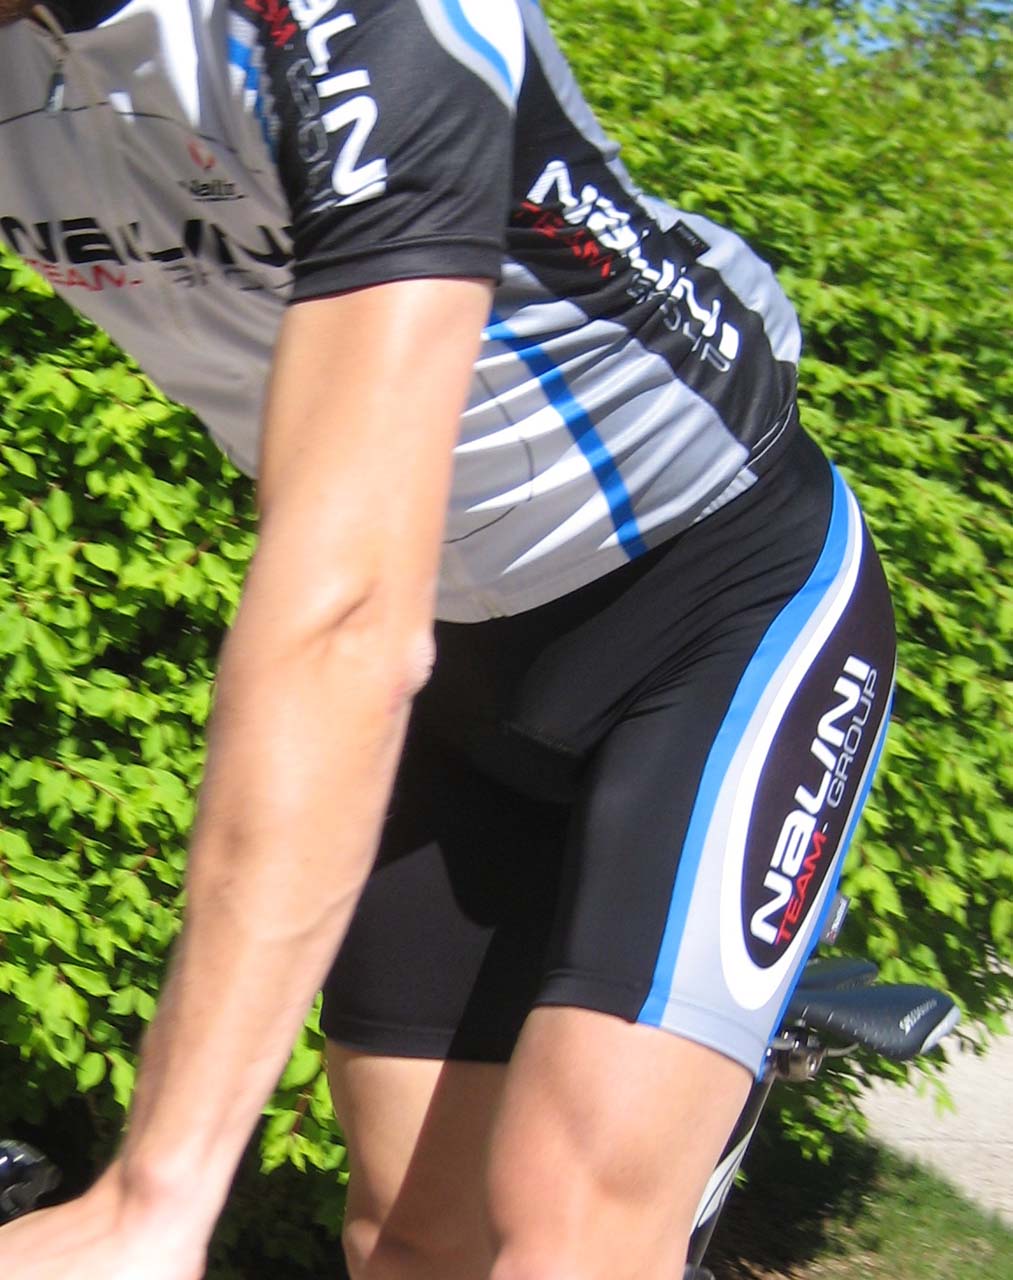 nalini cycling clothing